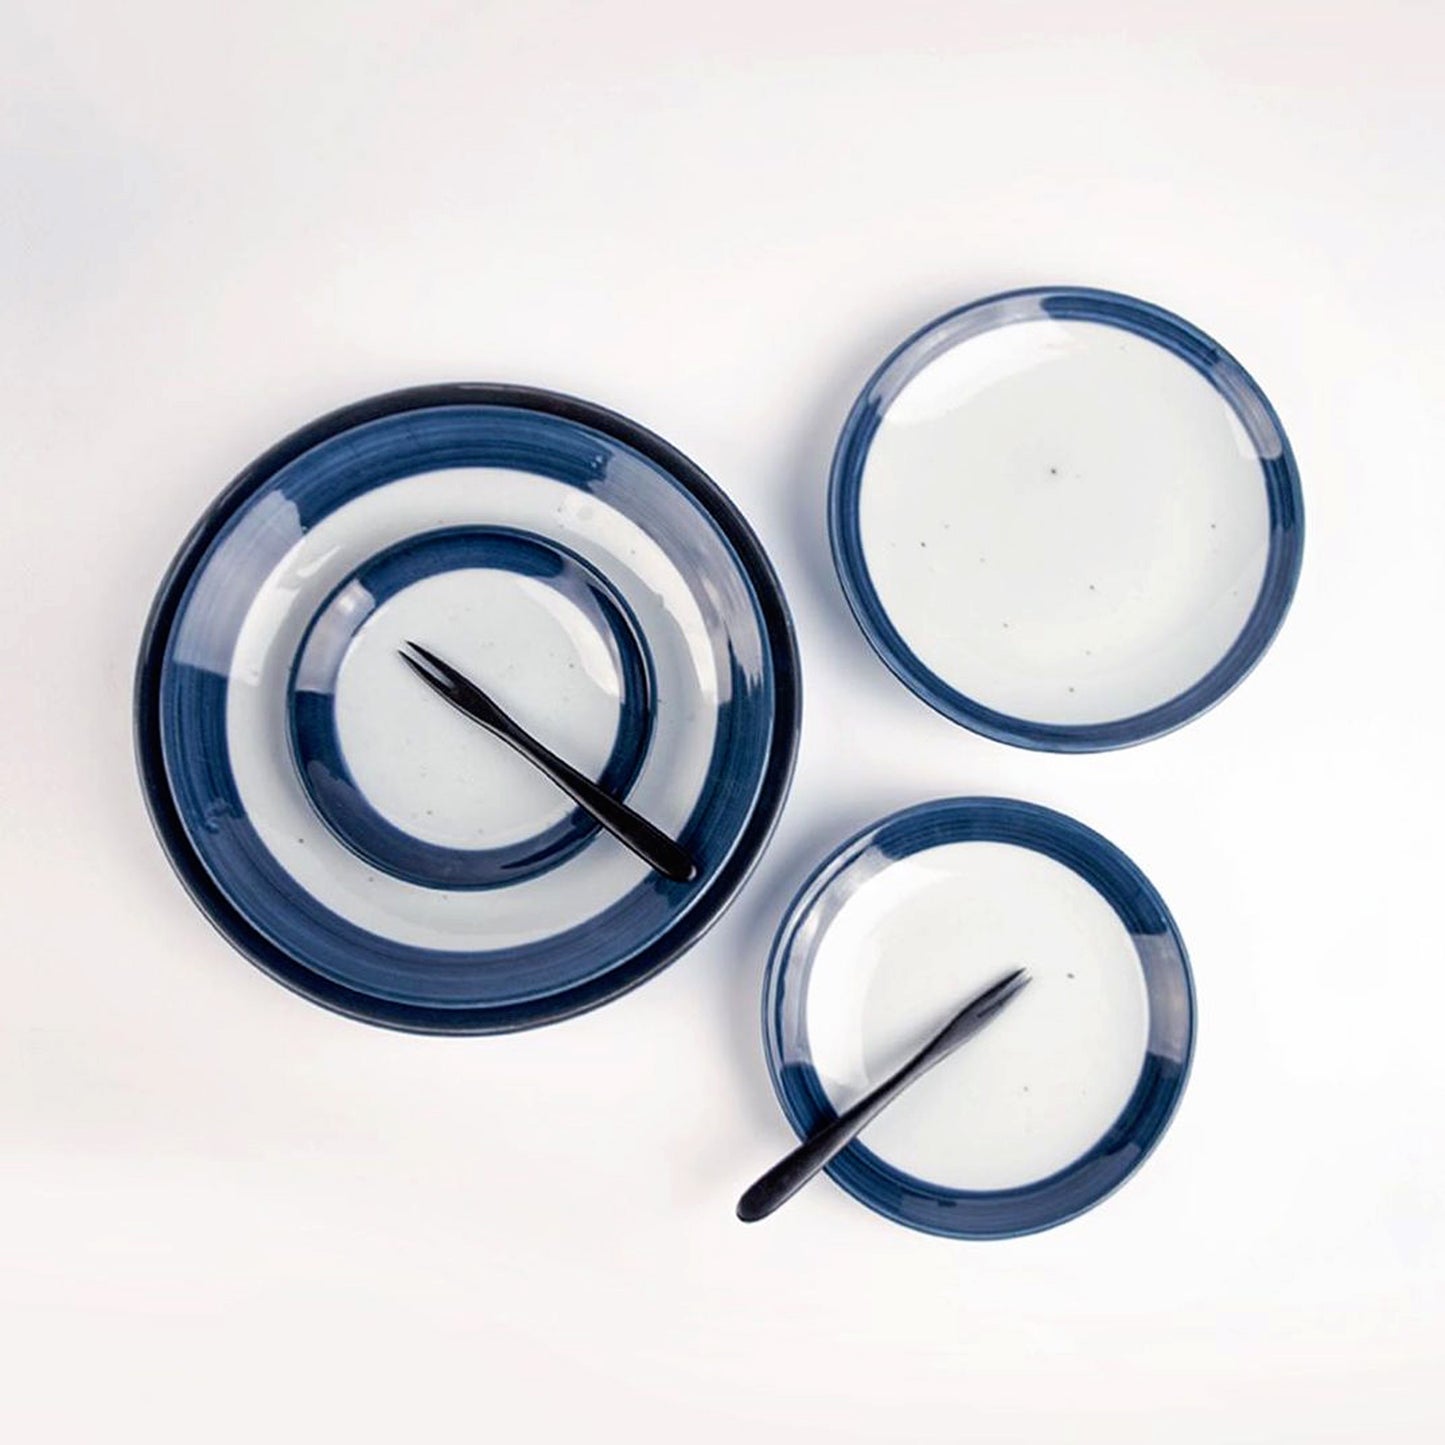 Frontiera Blue Moon Dinner Plate (Size 3) 26.5cm (1pc/4pcs Set) 𝟐𝟎% 𝐎𝐅𝐅